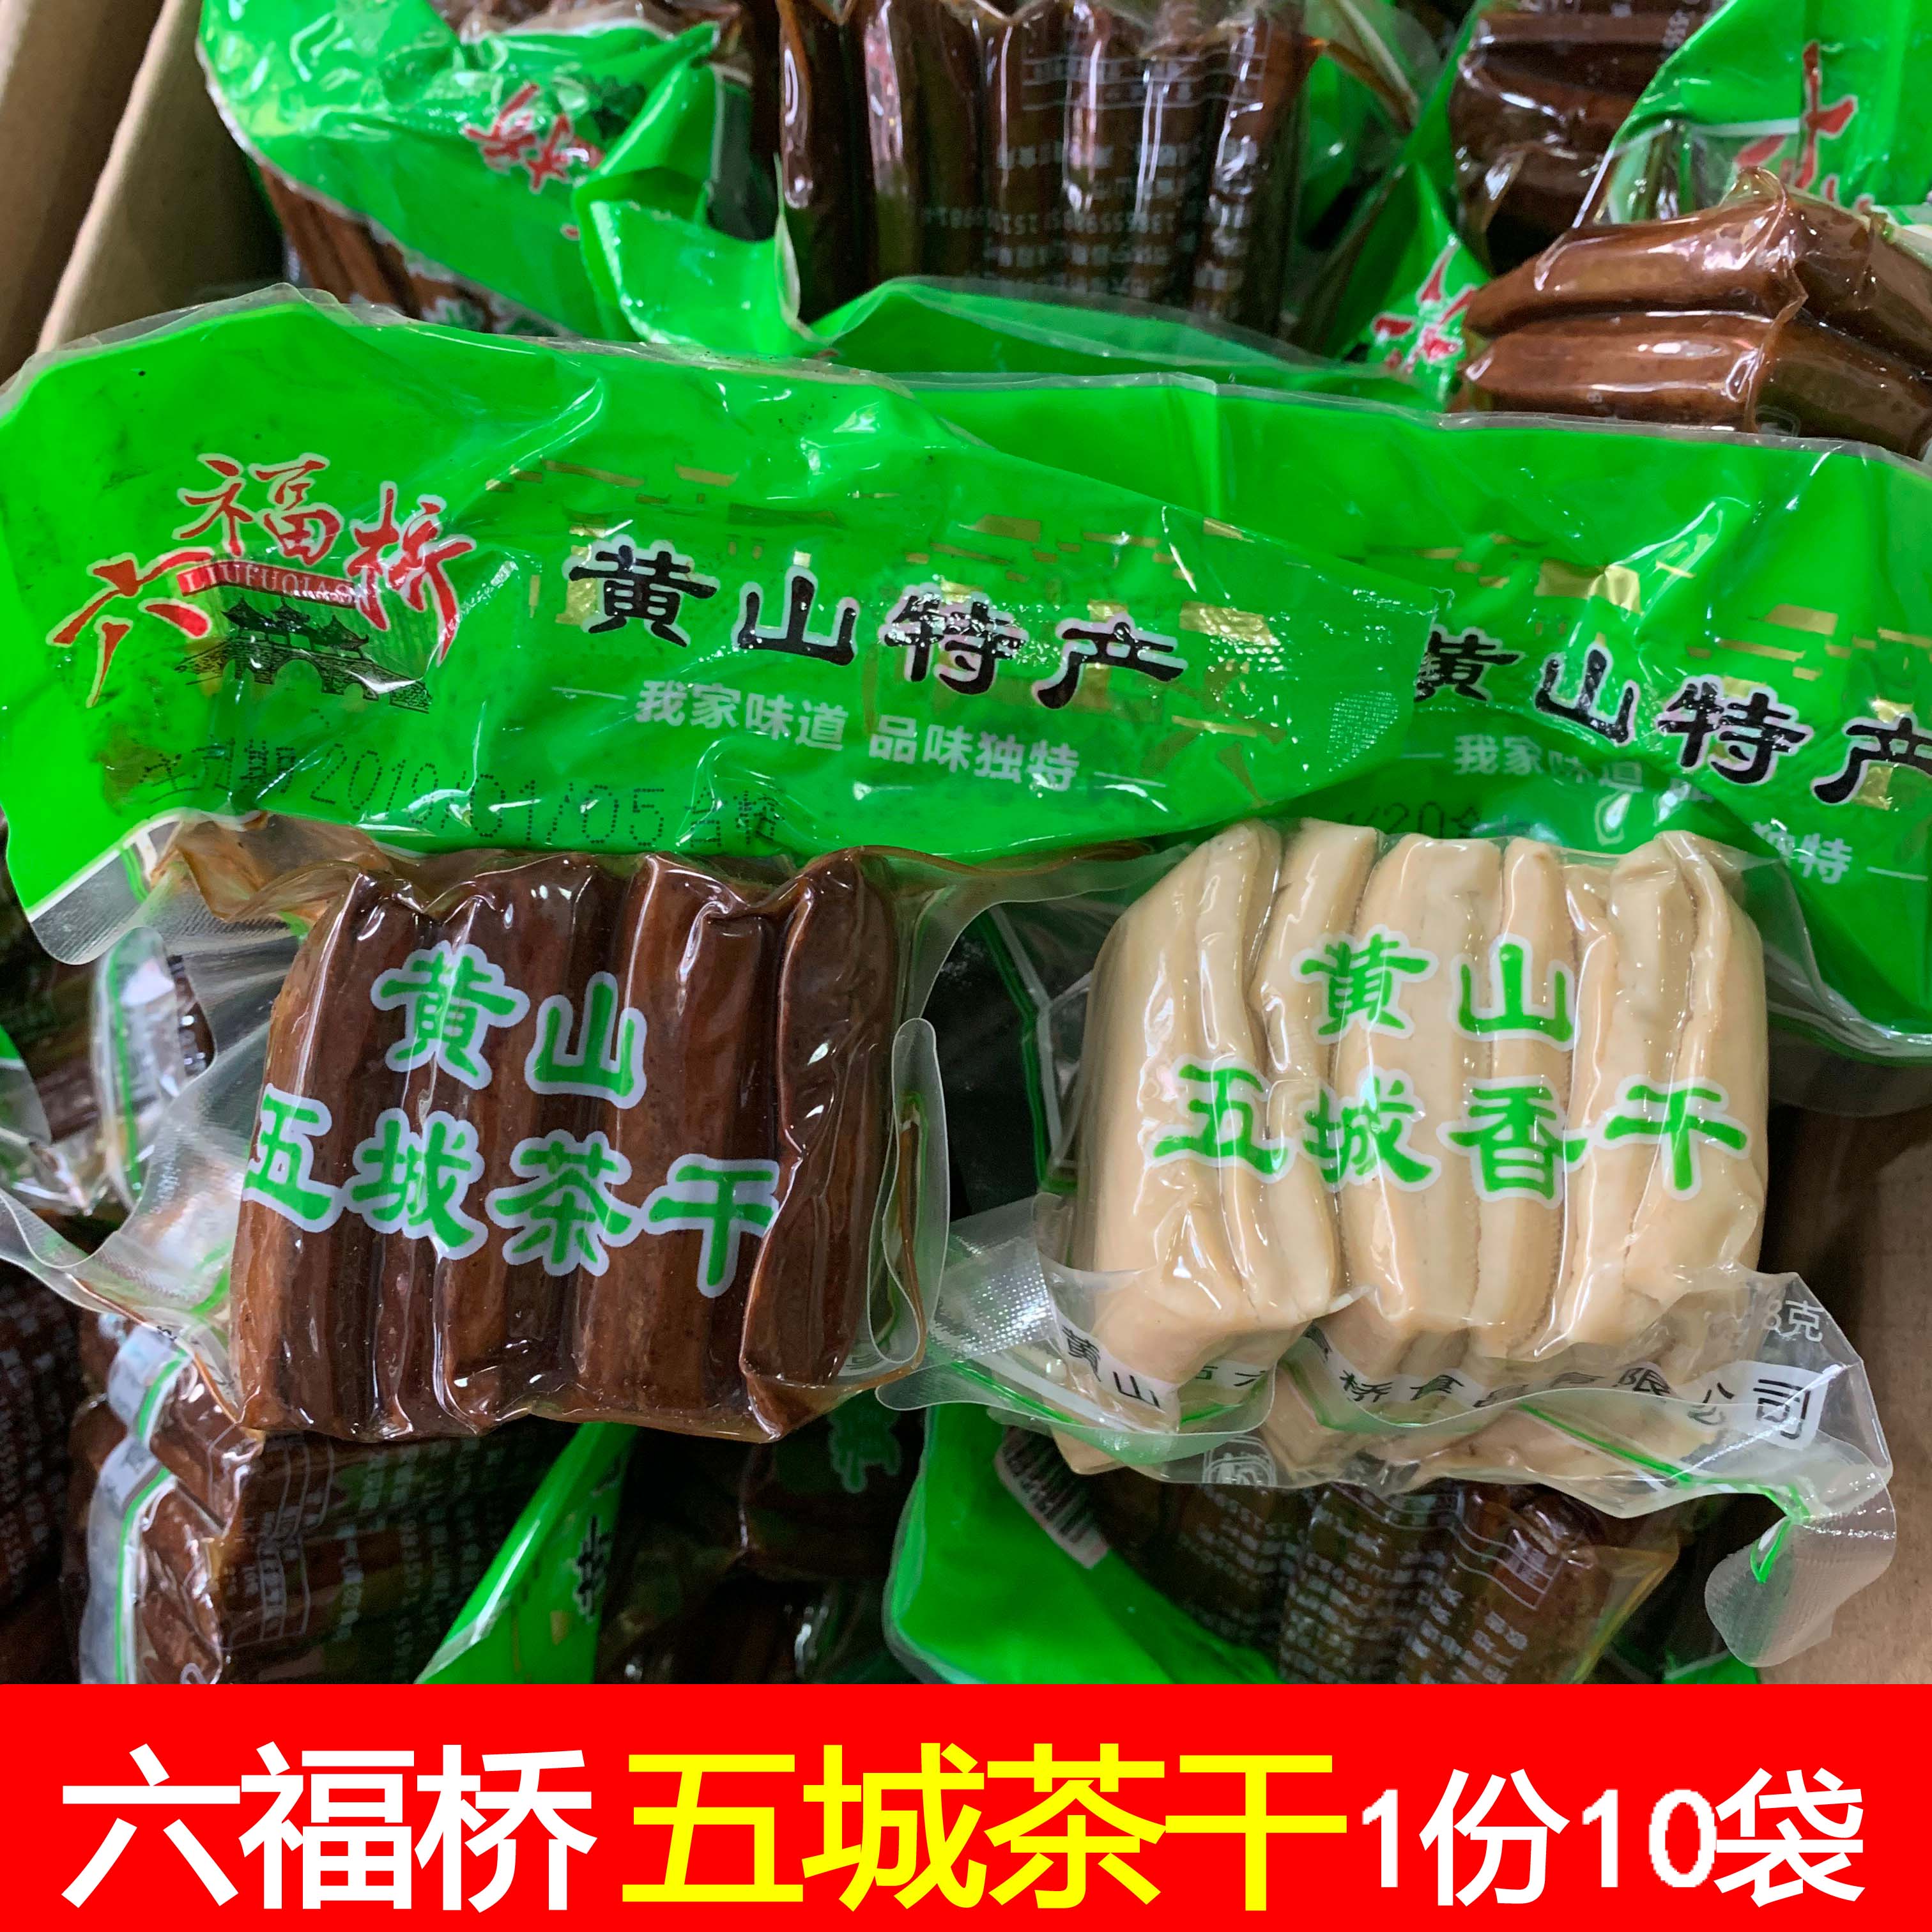 10袋(六福桥五城茶干)豆腐干安徽特产五香味黄山香干饭店餐厅炒菜